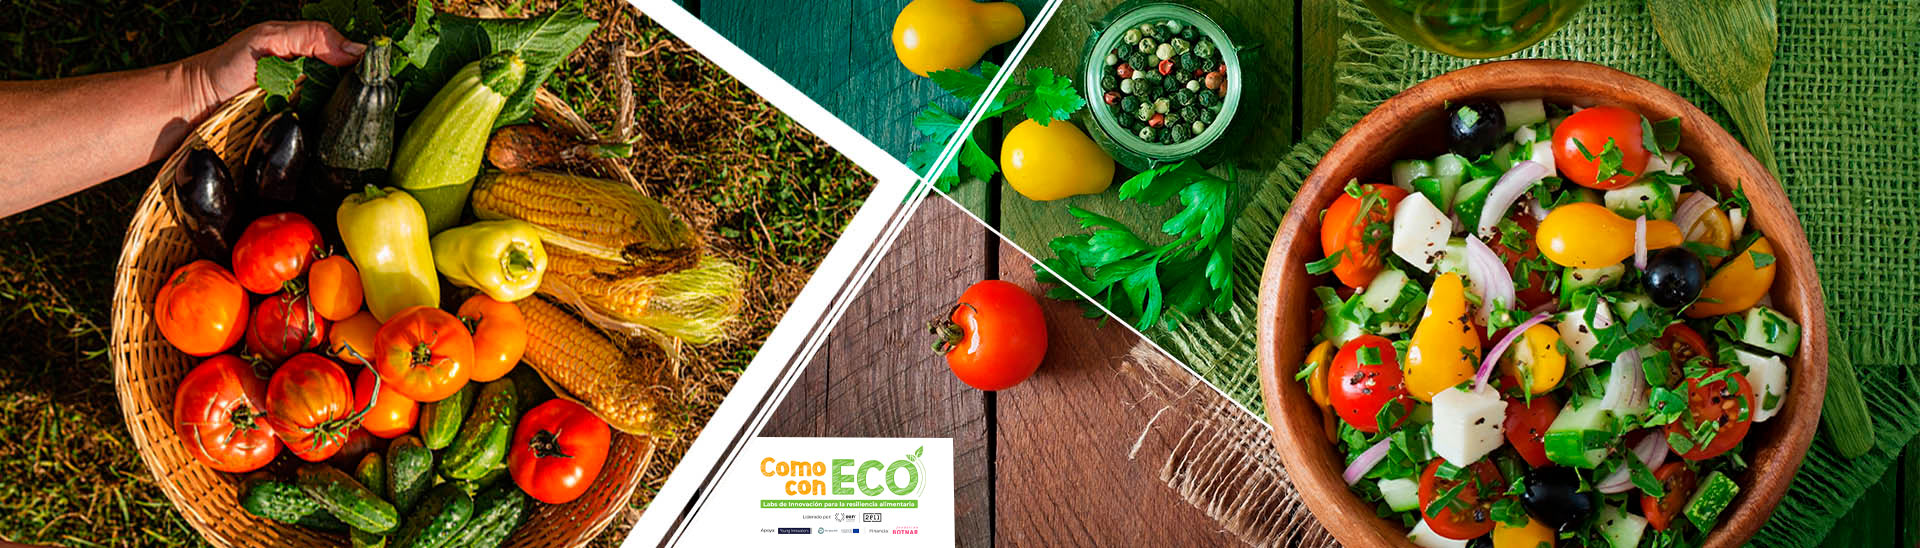 Como con ECO: labs de innovación para la resiliencia alimentaria.